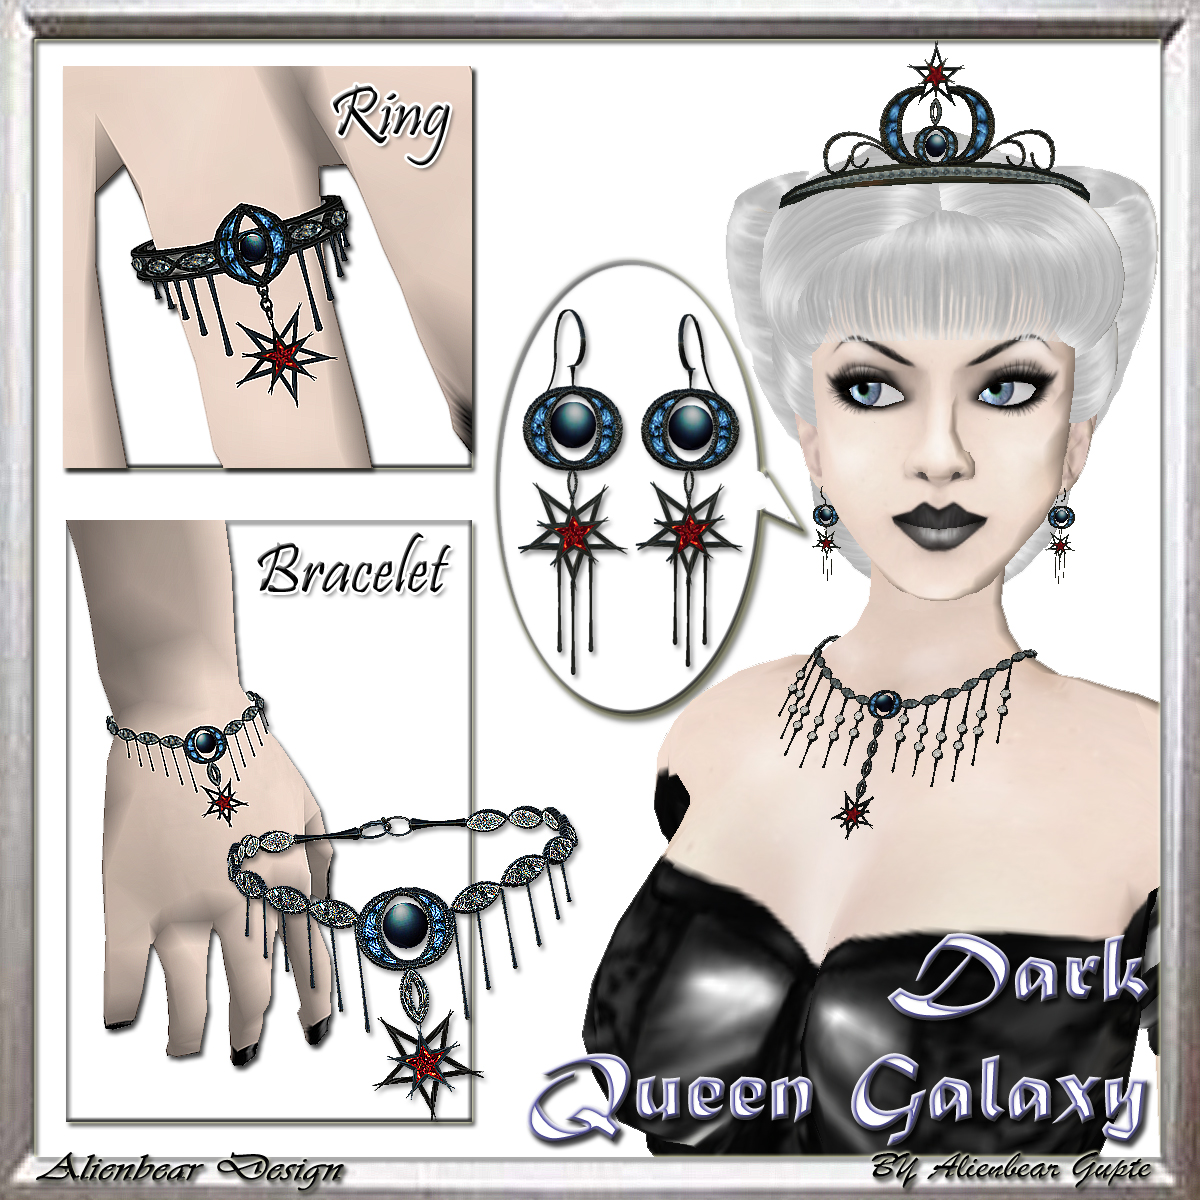 [Auction+-Dark+Queen+Galaxy.jpg]